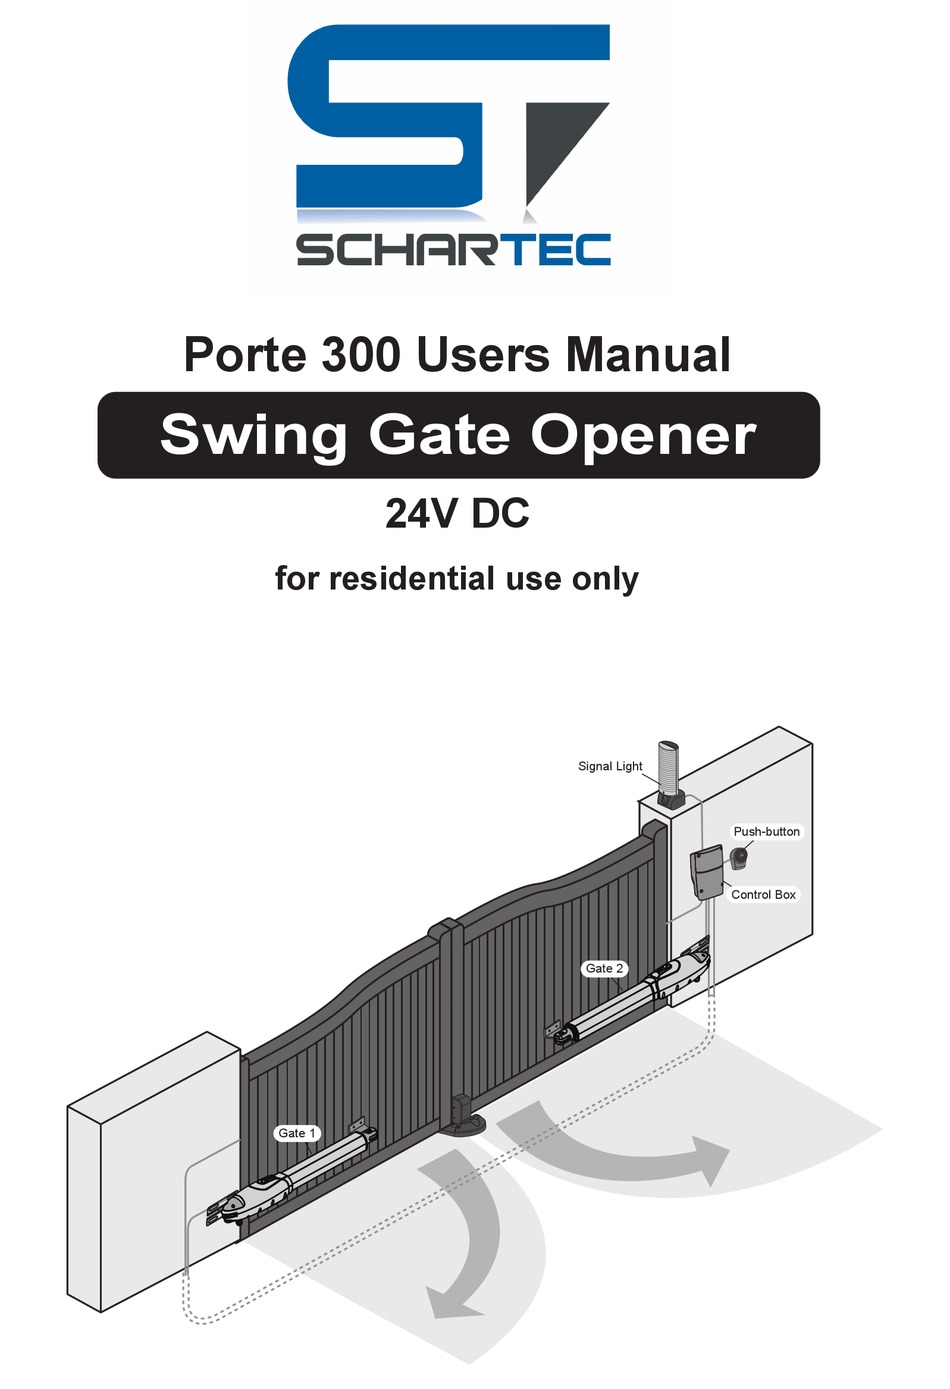 Schartec Porte 300 Swing Gate Opener 3000 N Dual Wing Door Operator Electric Automatic Motors